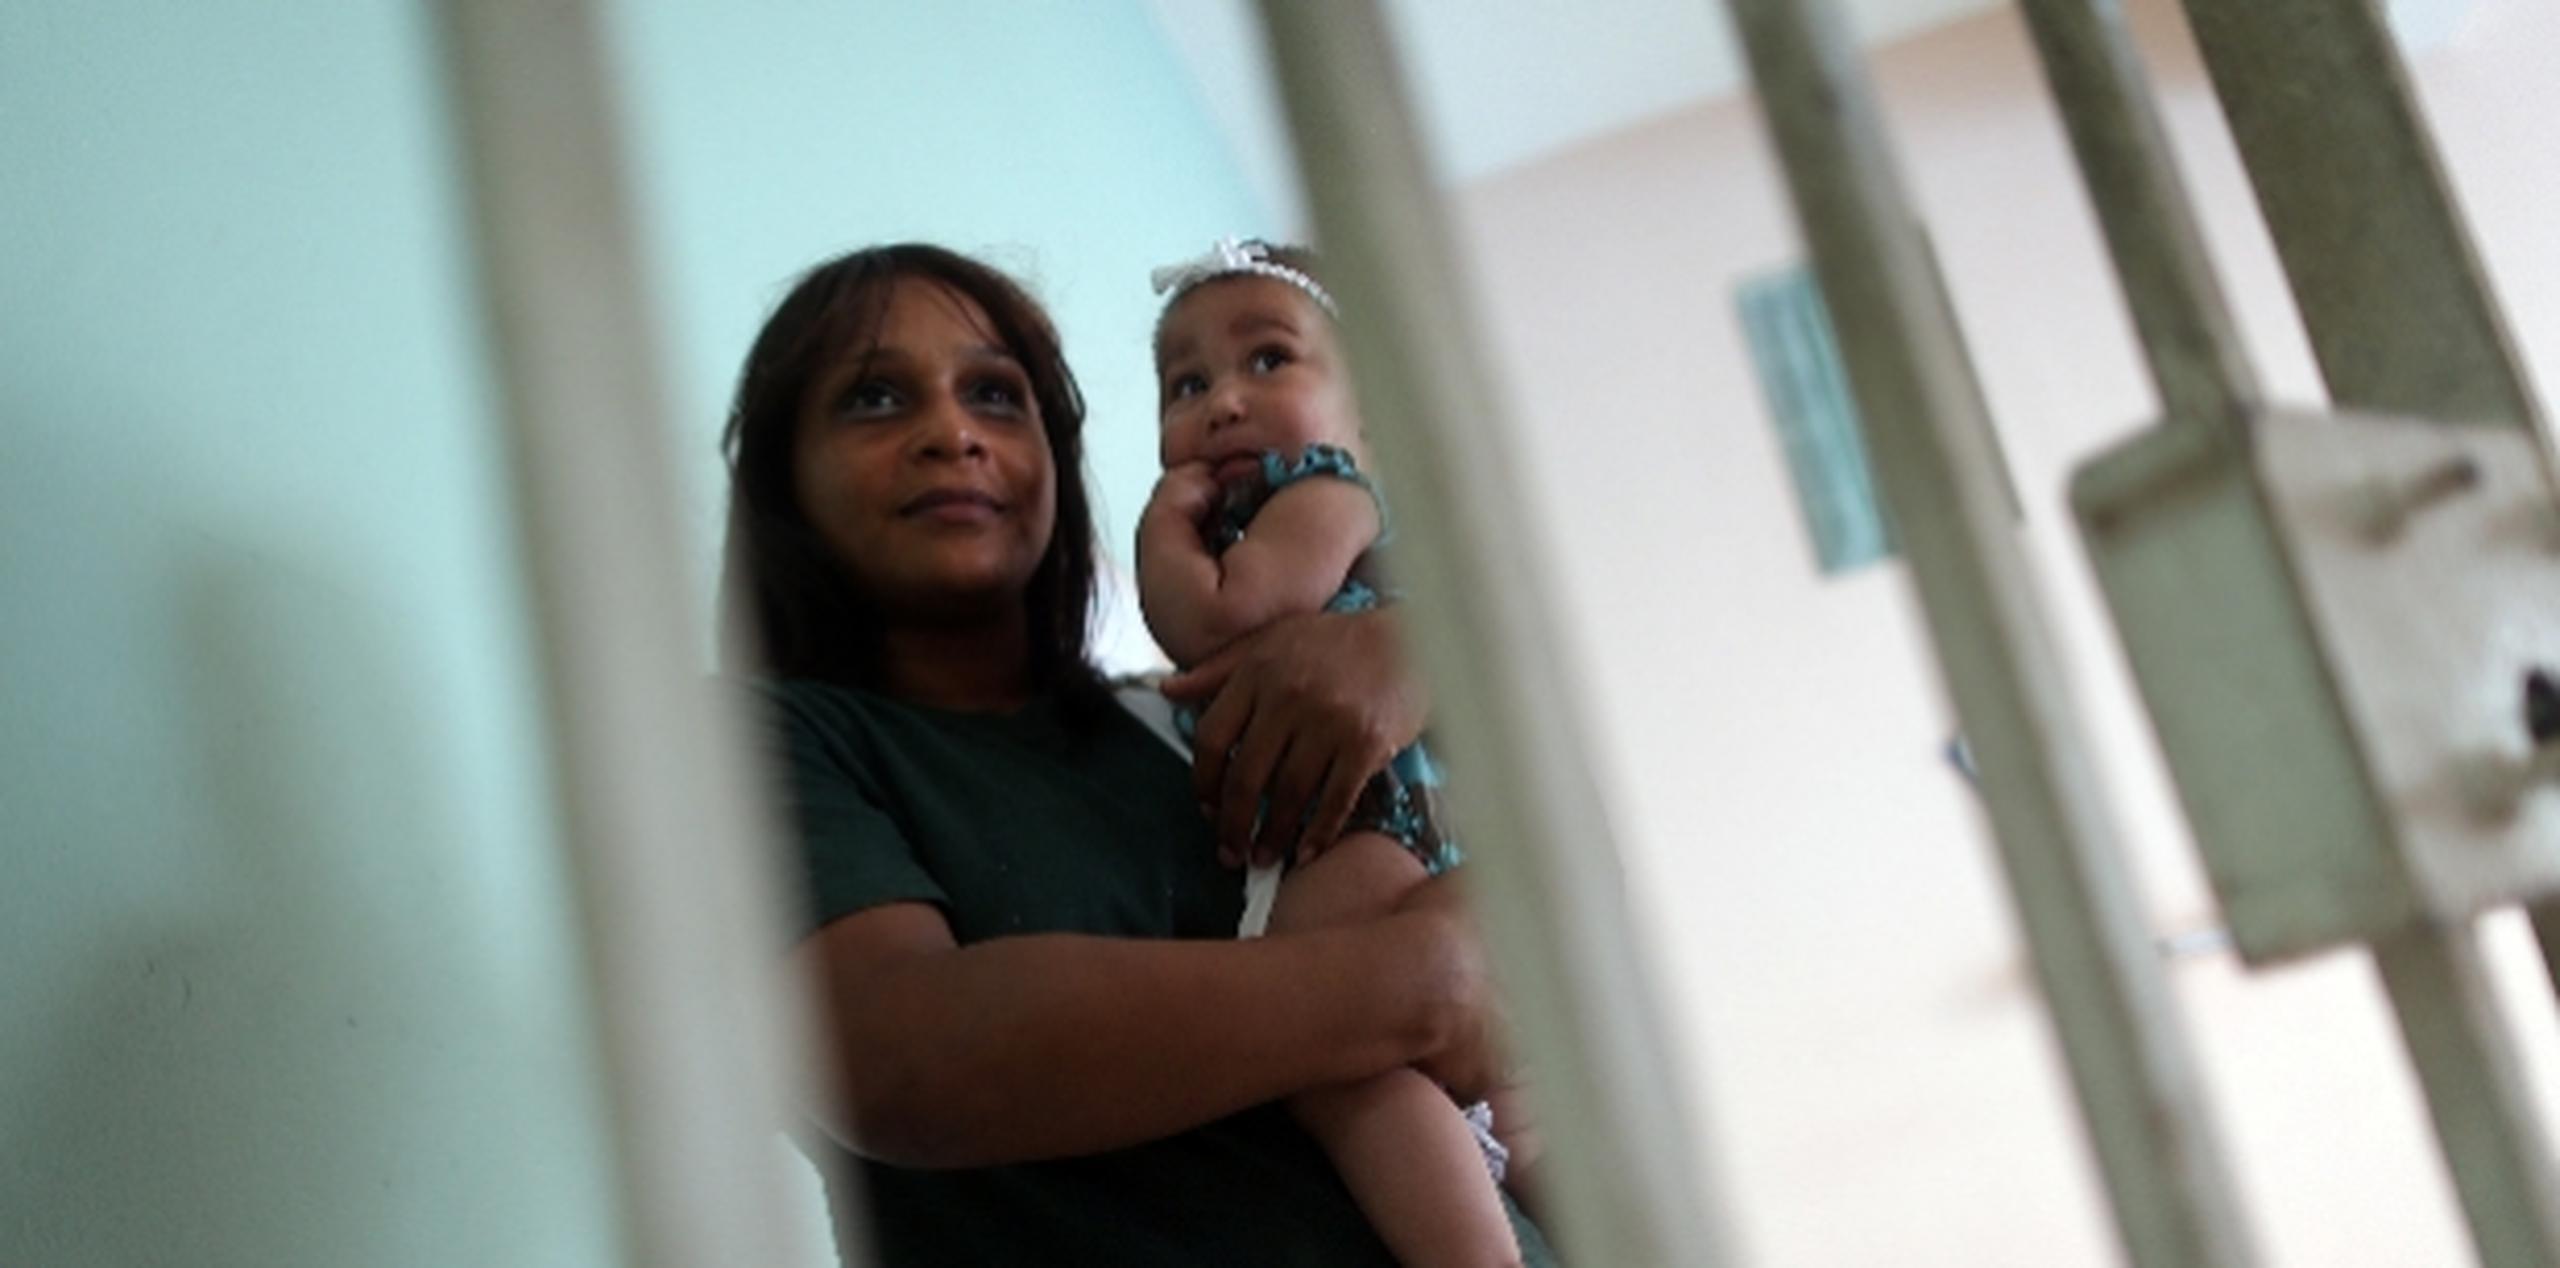 Yaneisi Paredes y su hija Mia Janet Paredes saldrán de prisión en mayo de 2014. xavier.araujo@gfrmedia.com